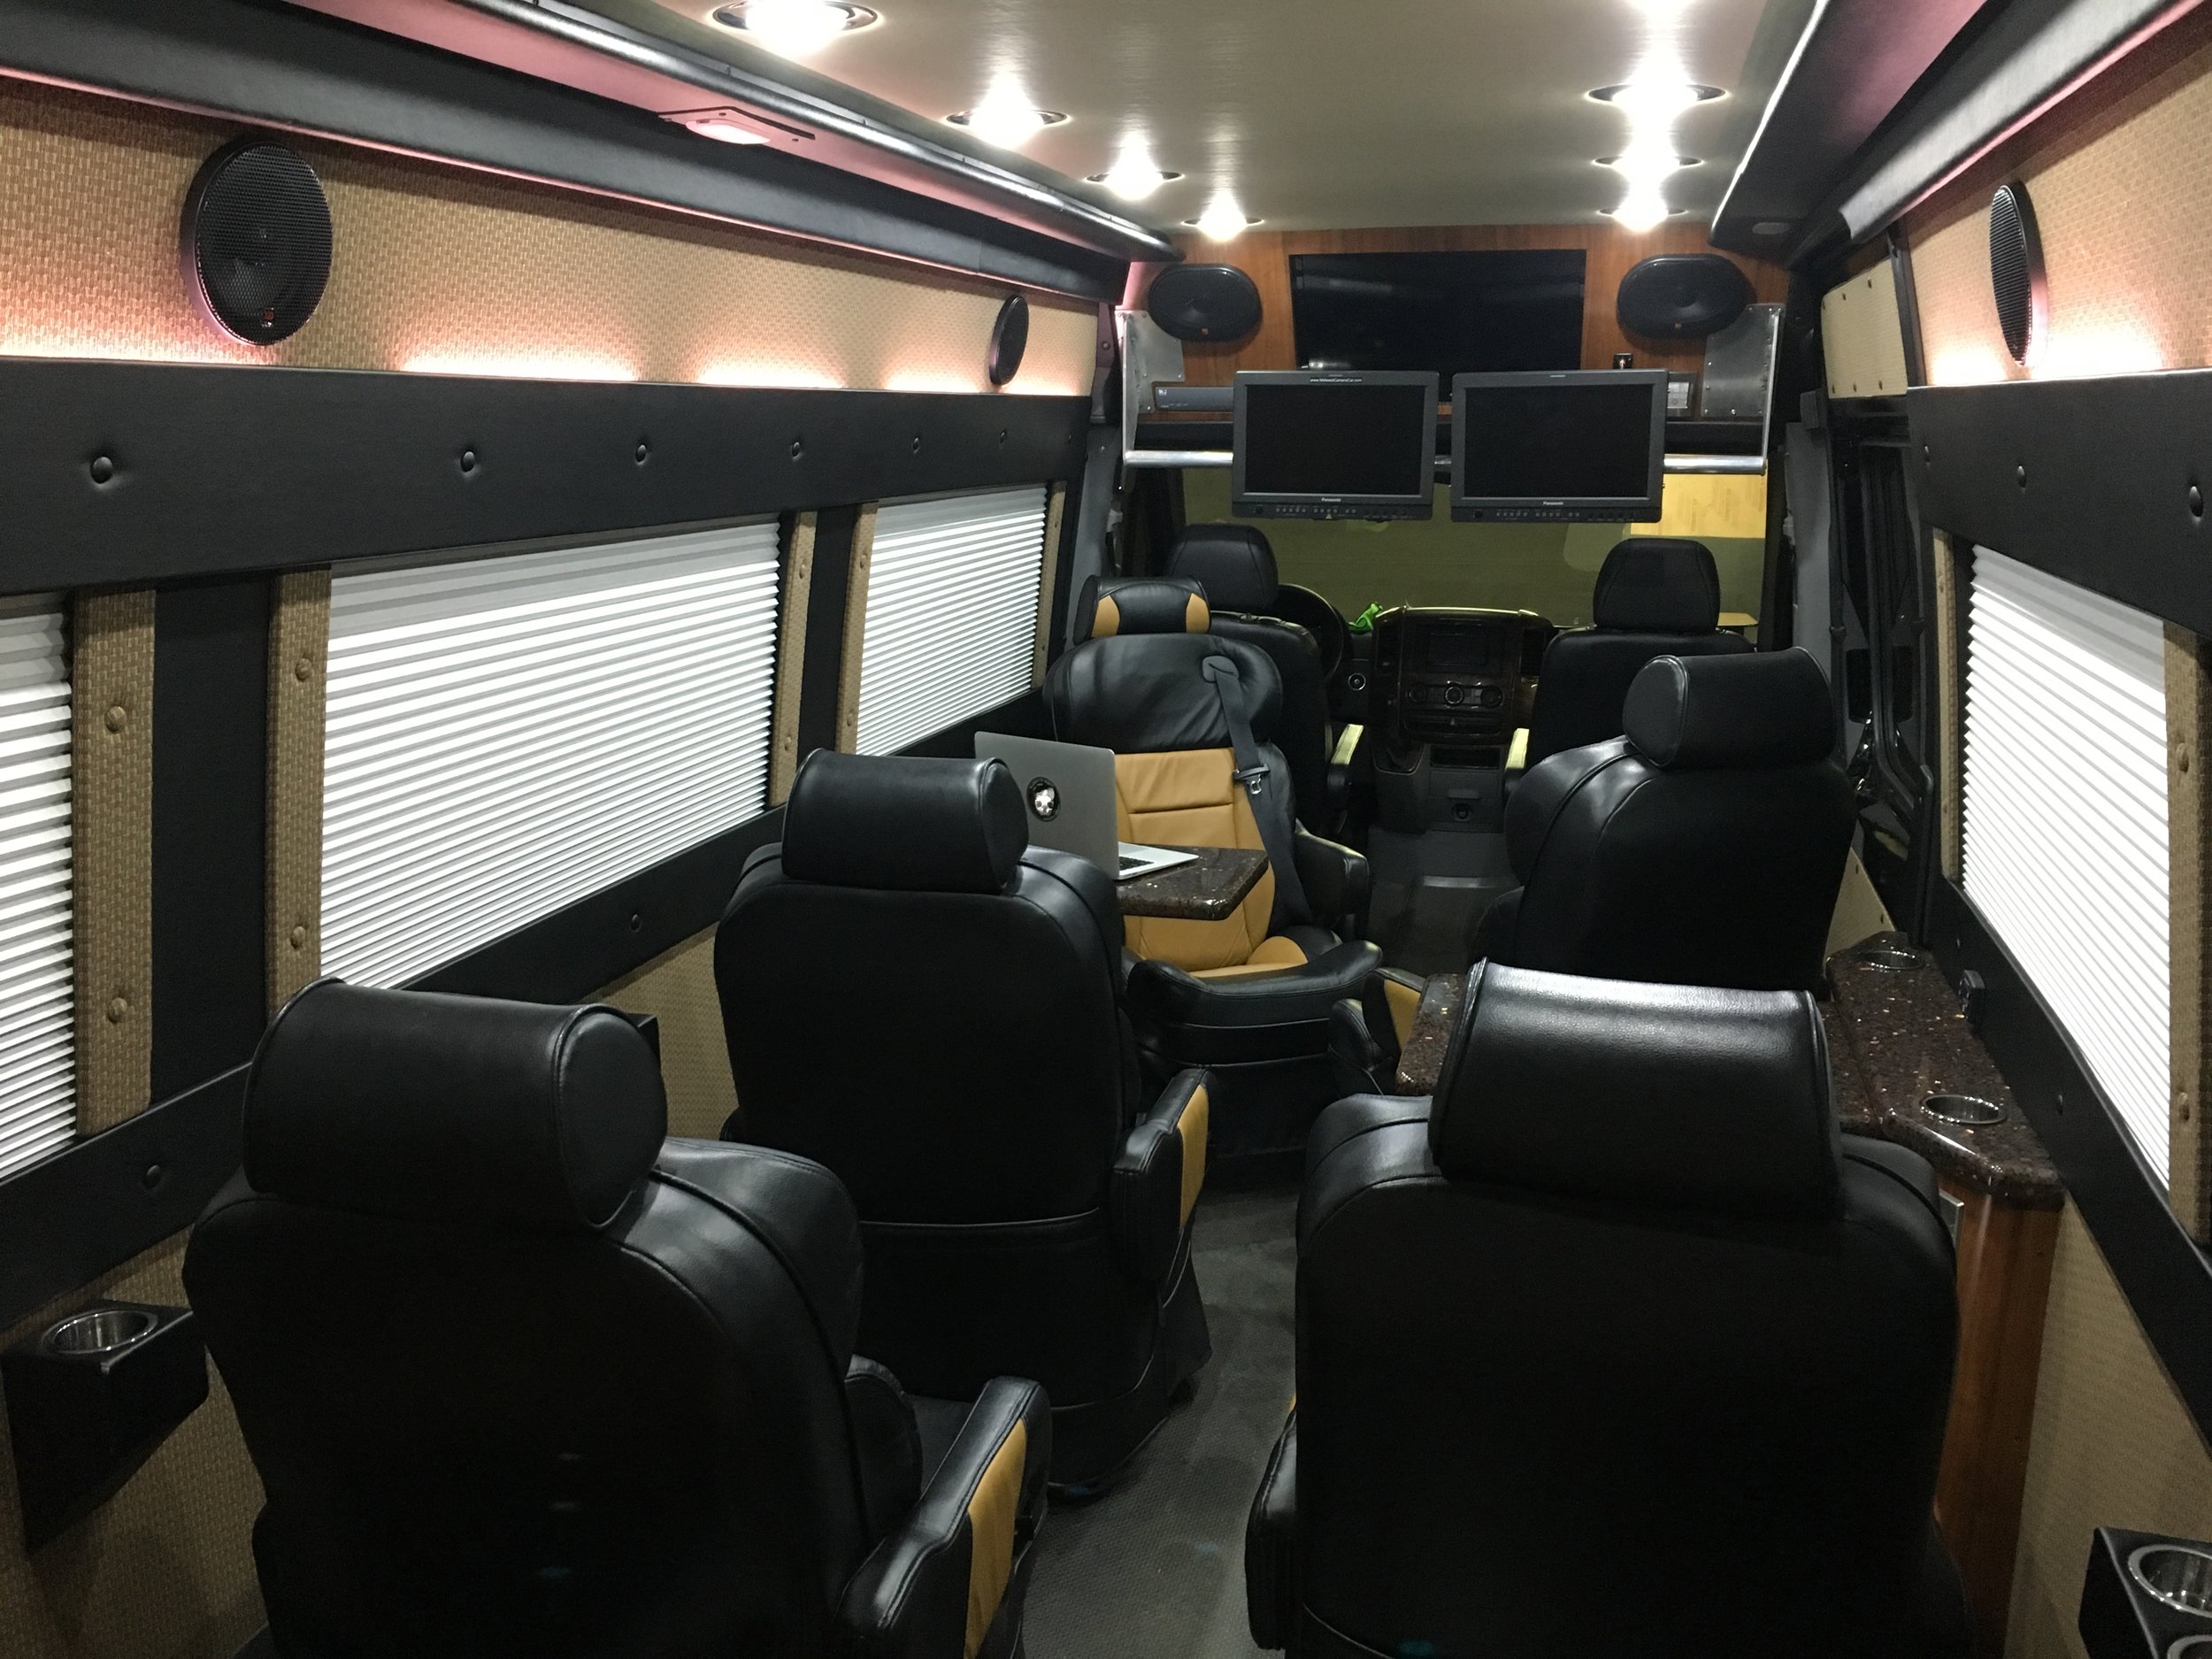 Seating for 9 adults.  Executive Van, Client Van, Video Village Van, Chase Van, Command Van.